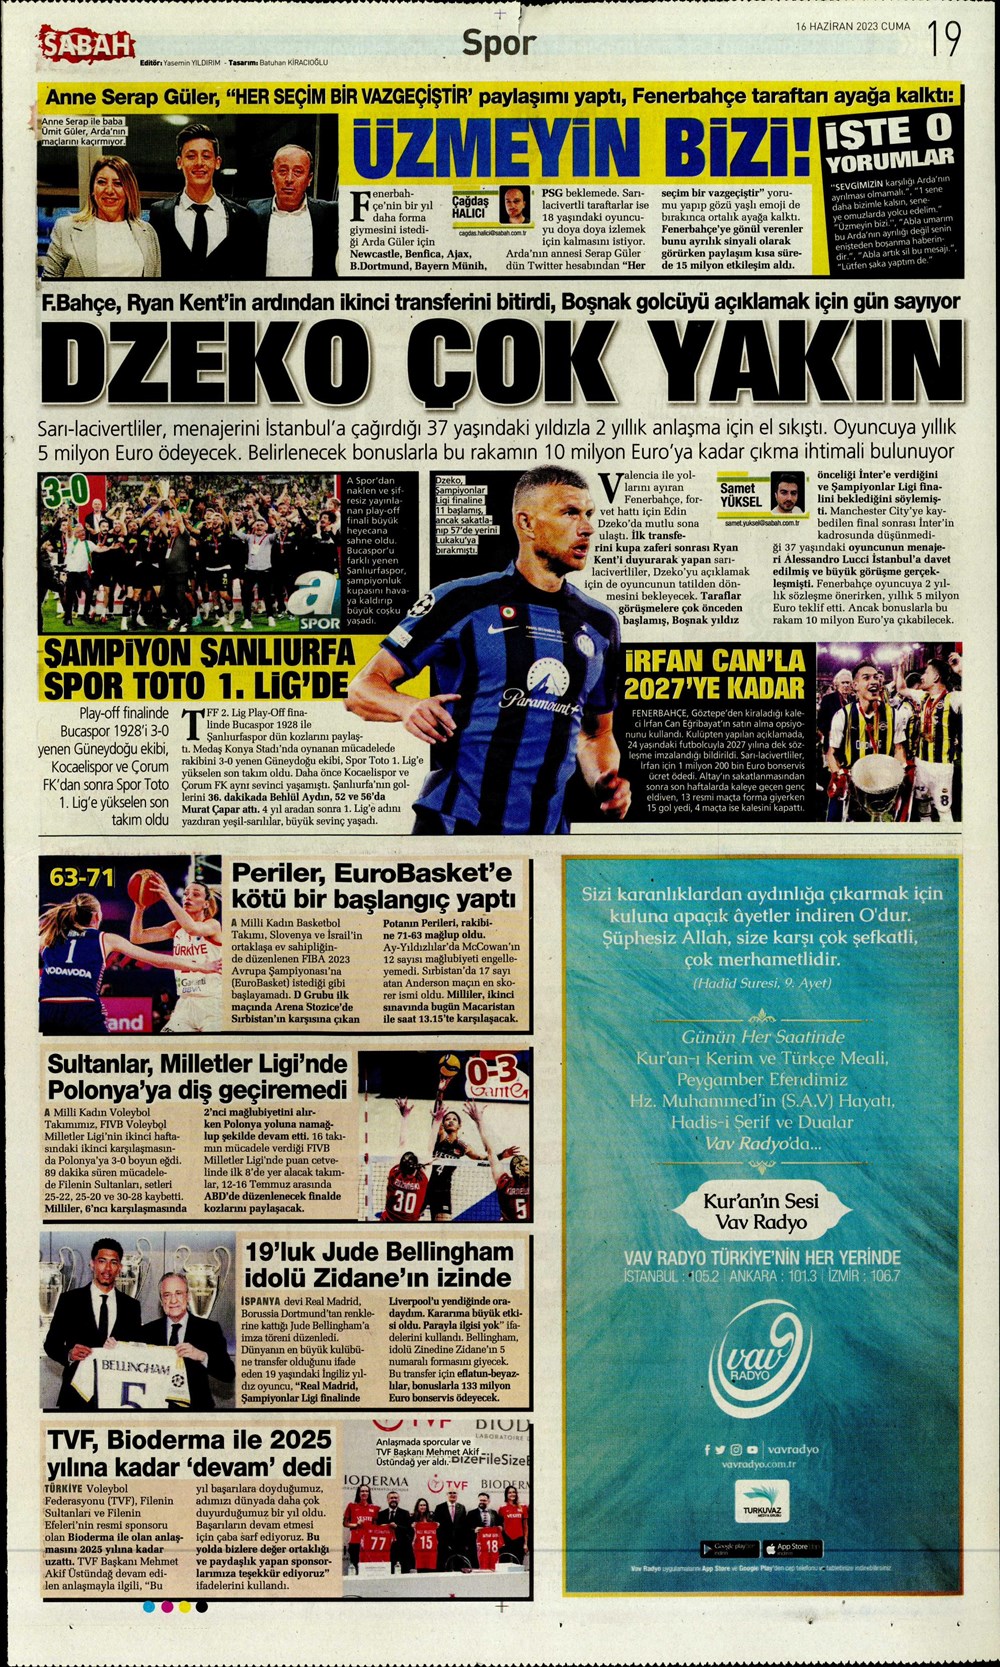 "Dzeko çok yakın" Sporun manşetleri (16 Haziran 2023)  - 21. Foto